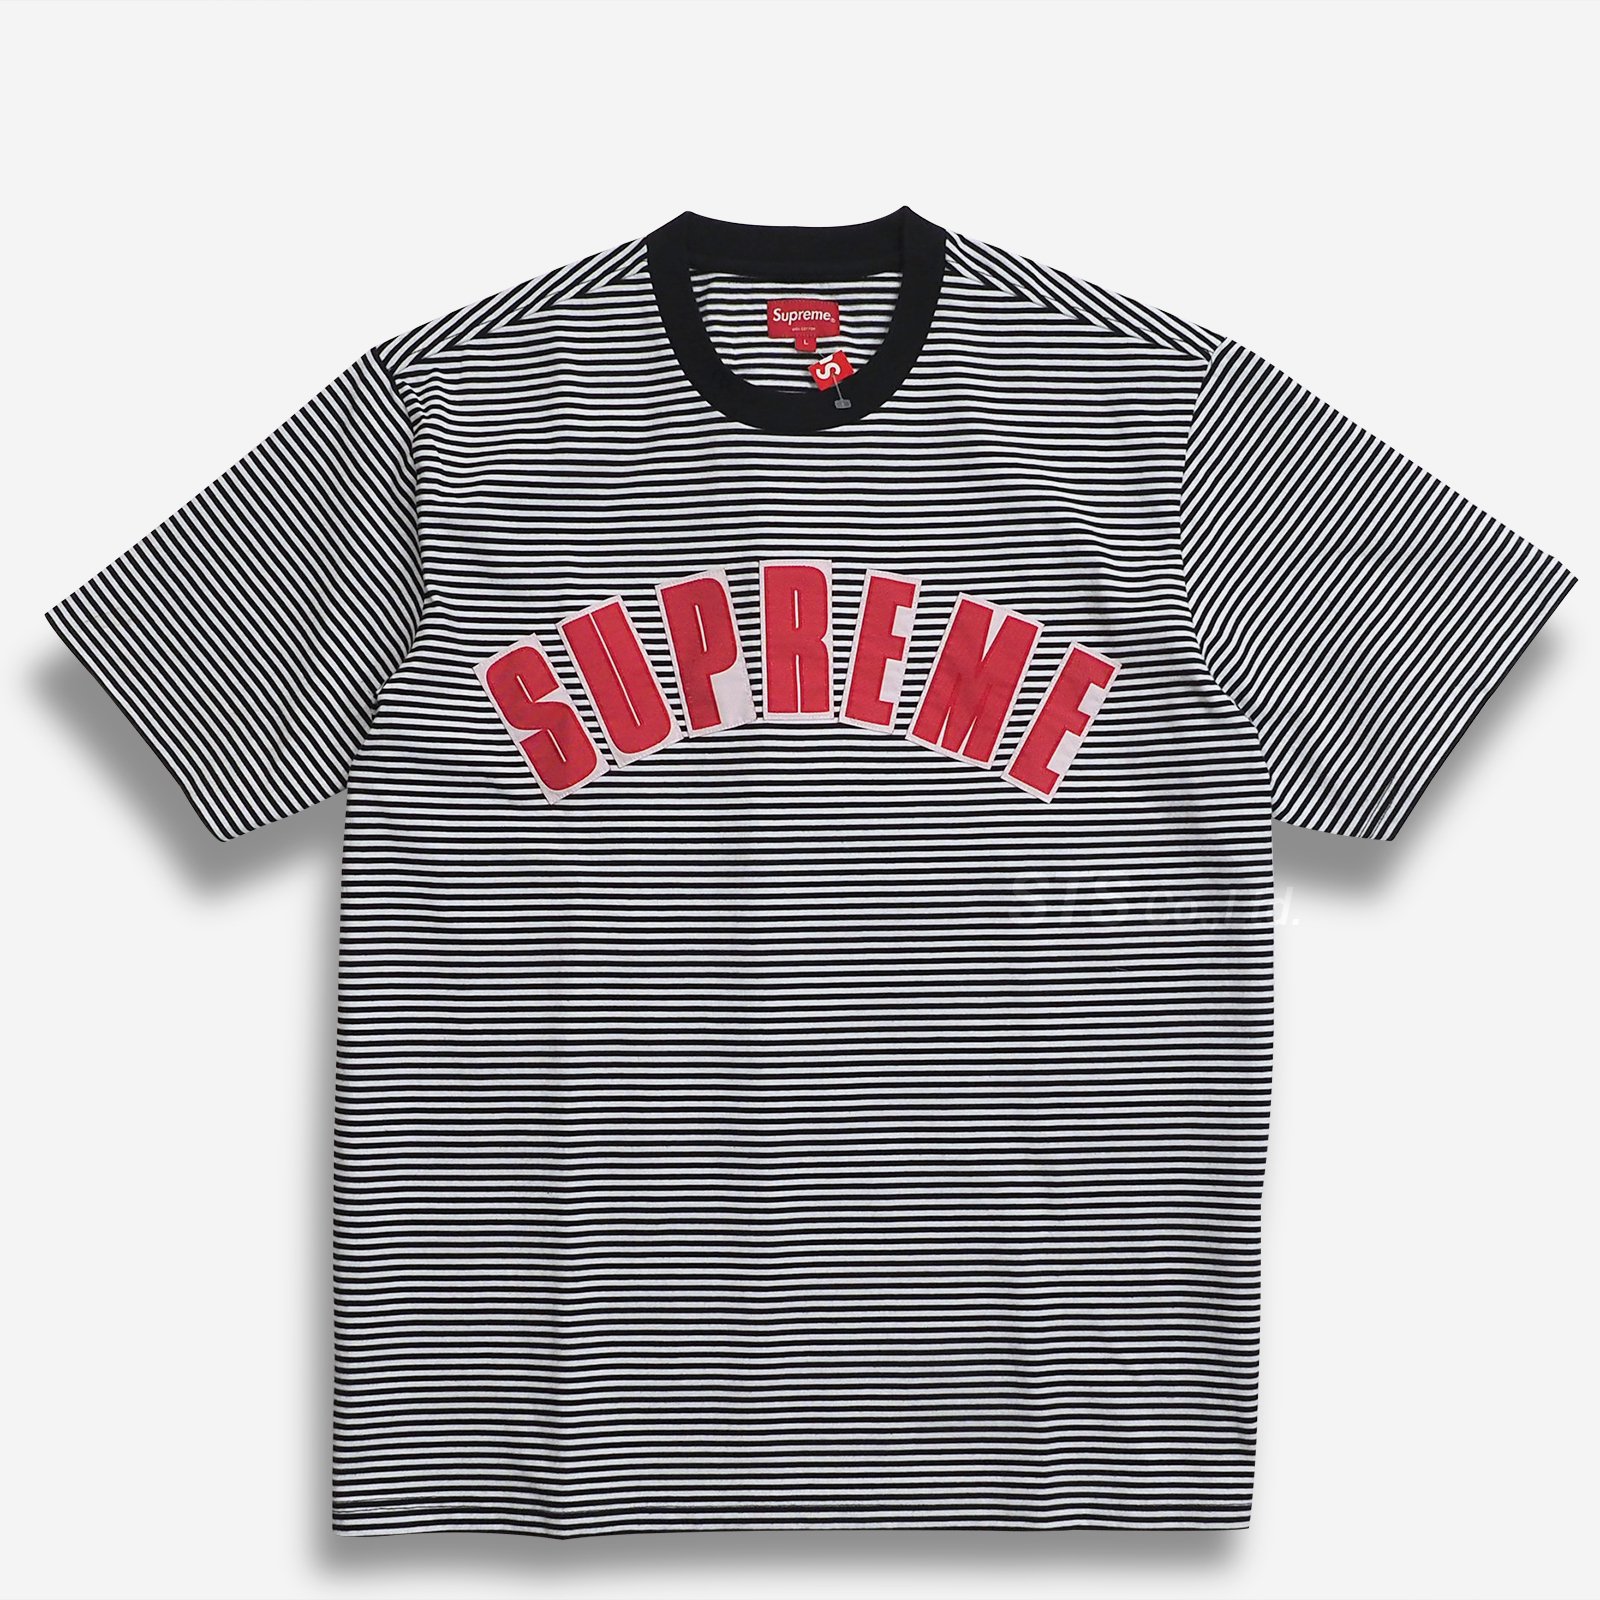 Supreme Printed Stripe S/S Top Black